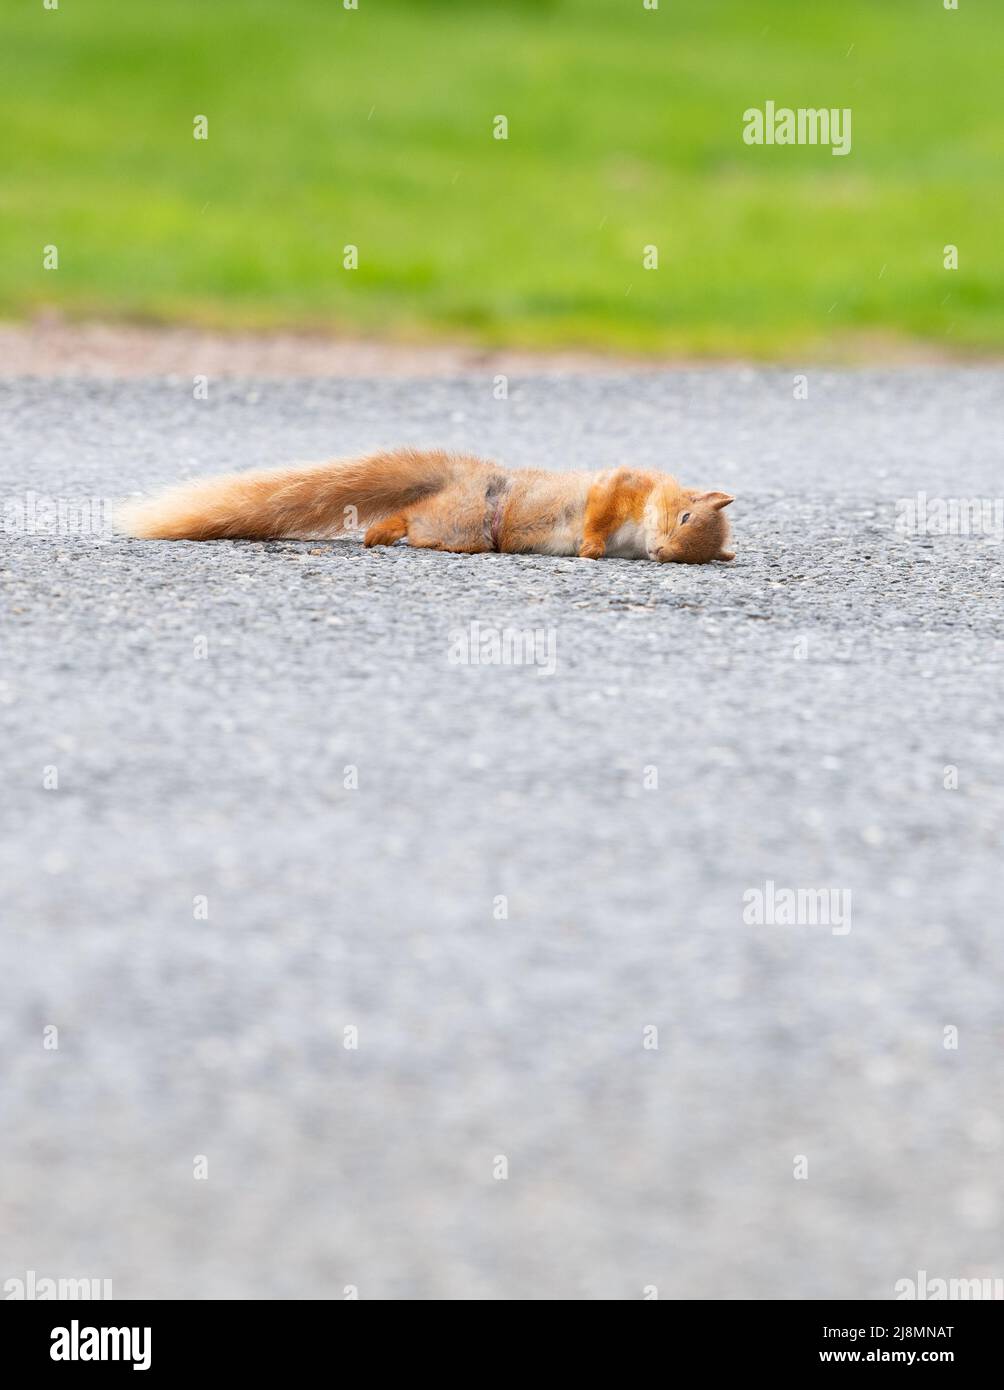 Red Squirrel tot auf der Straße - durch vorbeifahrende Autos getötet - Schottland, Großbritannien Stockfoto